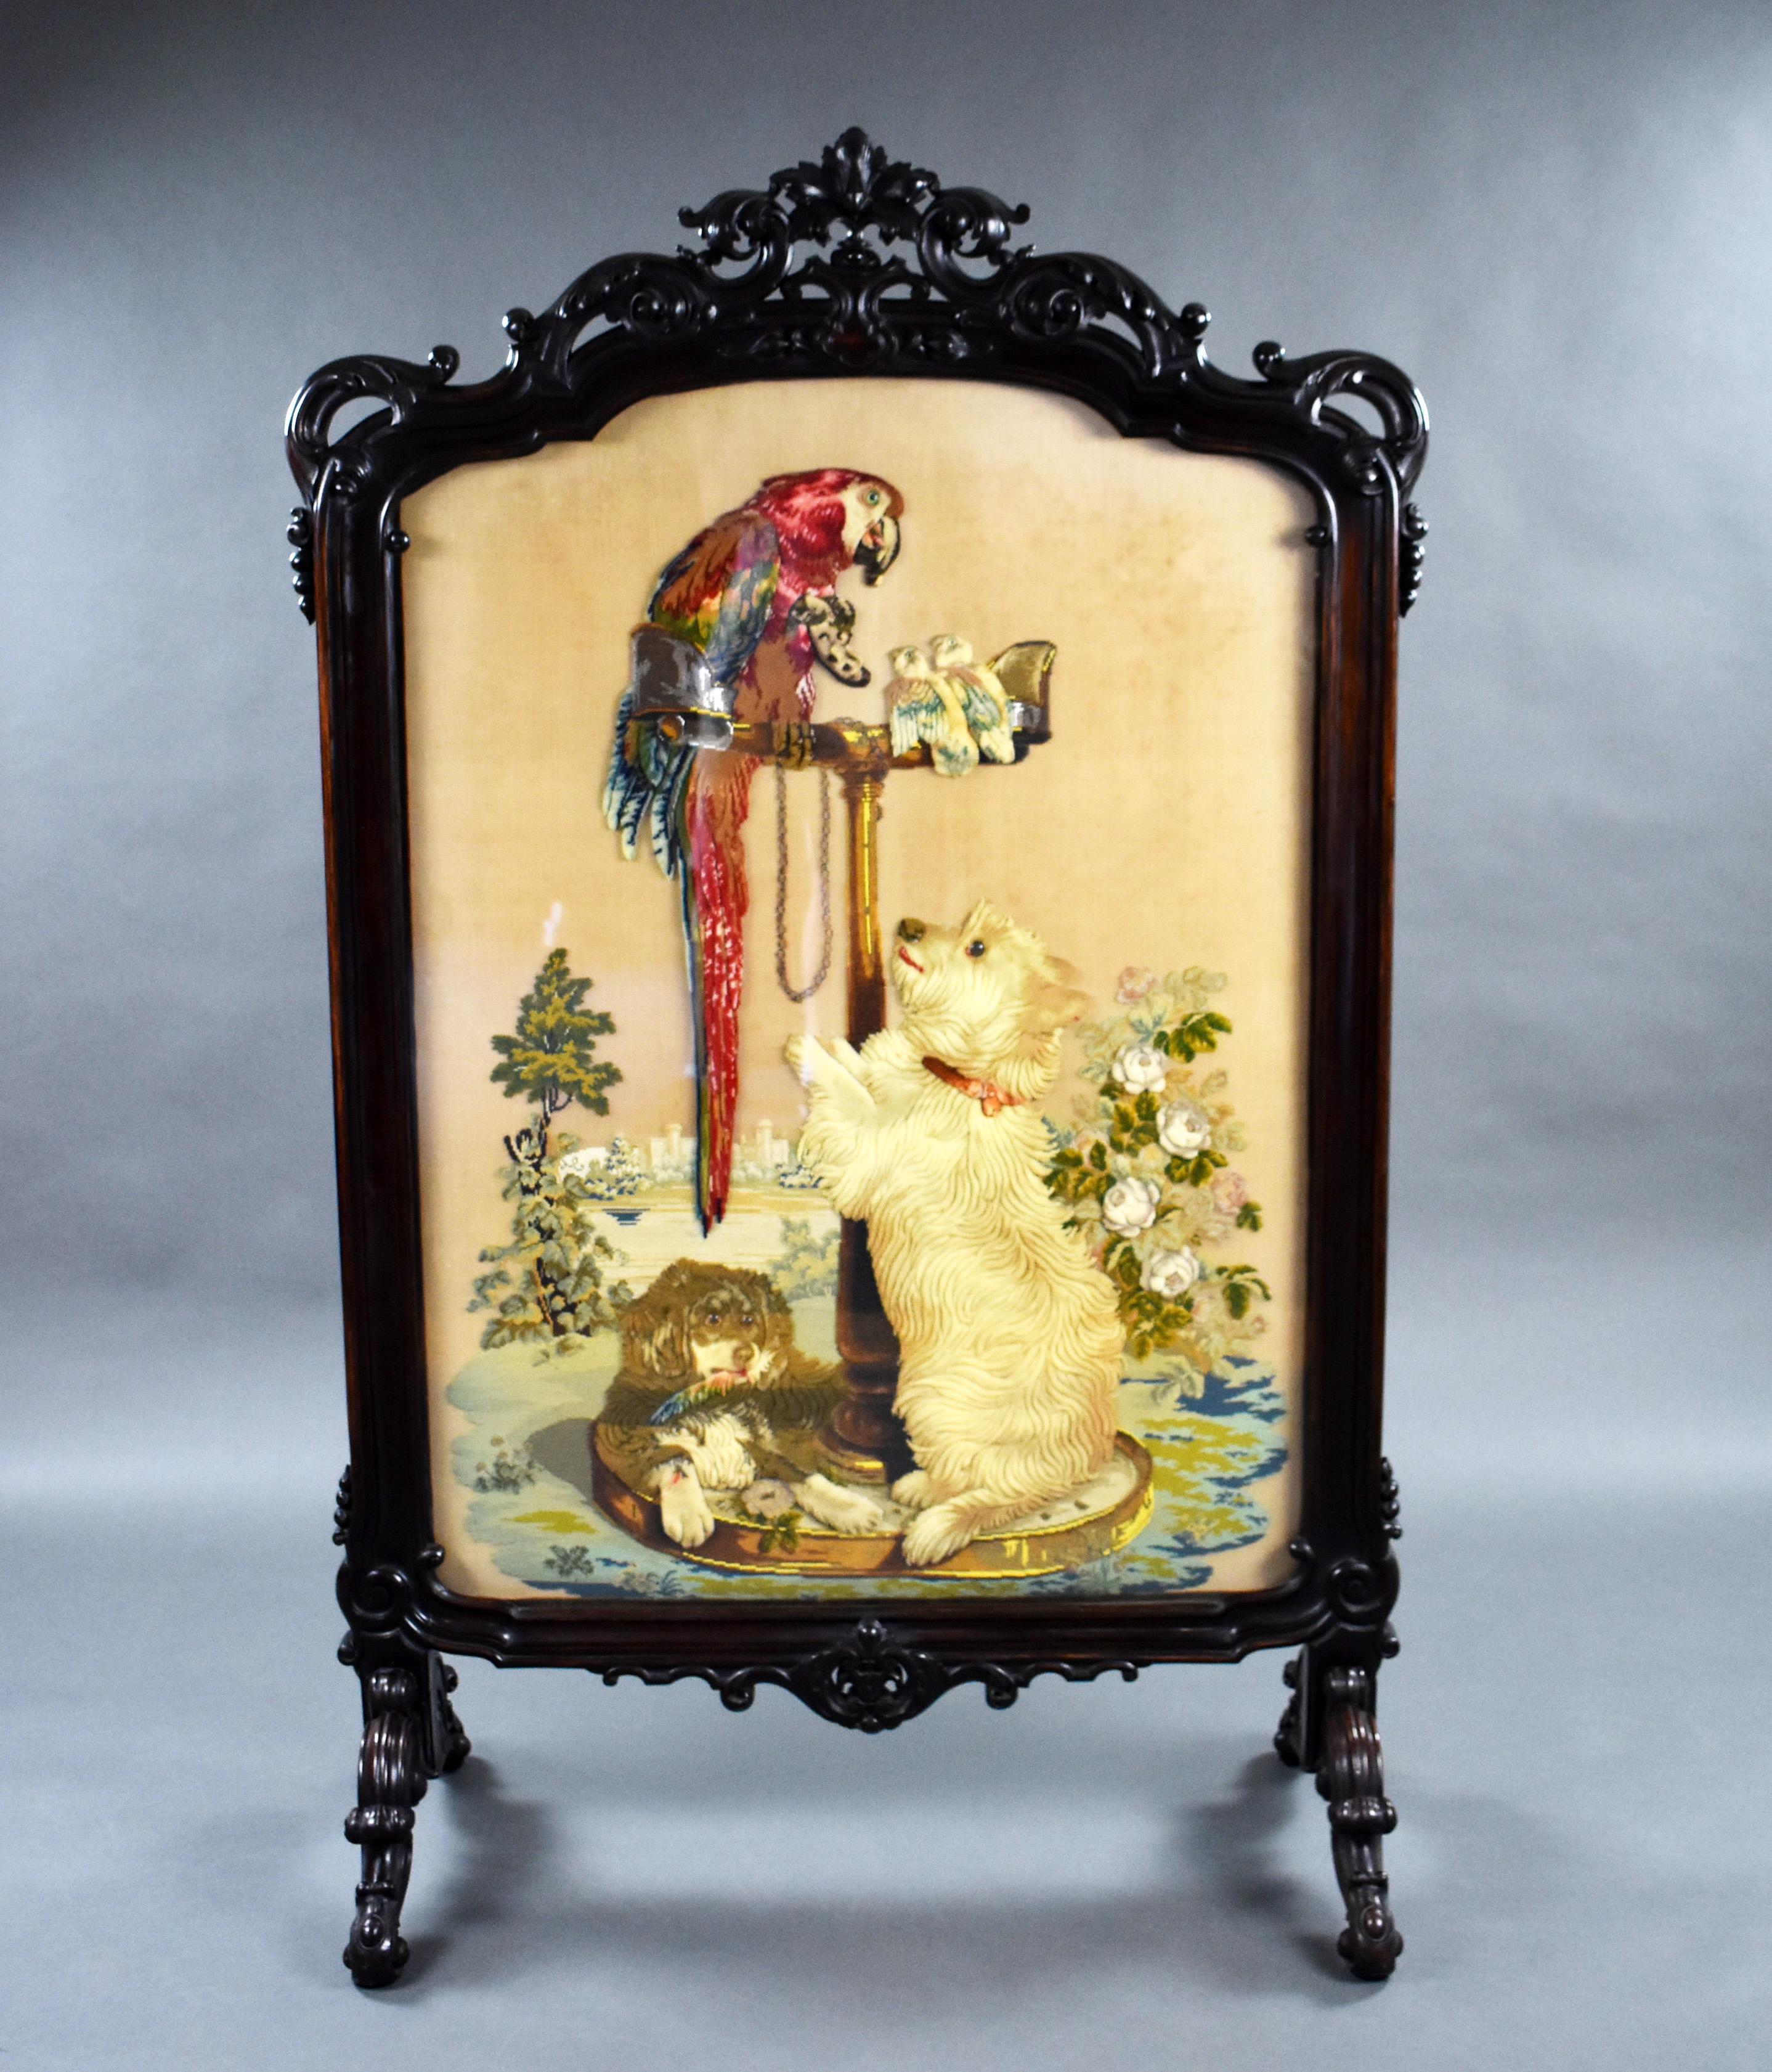 Zum Verkauf steht ein feiner und seltener großer viktorianischer Rosenholzschirm mit einer kunstvoll geschnitzten Oberseite, über der Stickerei, die einen Hund darstellt, der an einem Papagei auf einer Stange hochspringt, mit zwei anderen kleinen